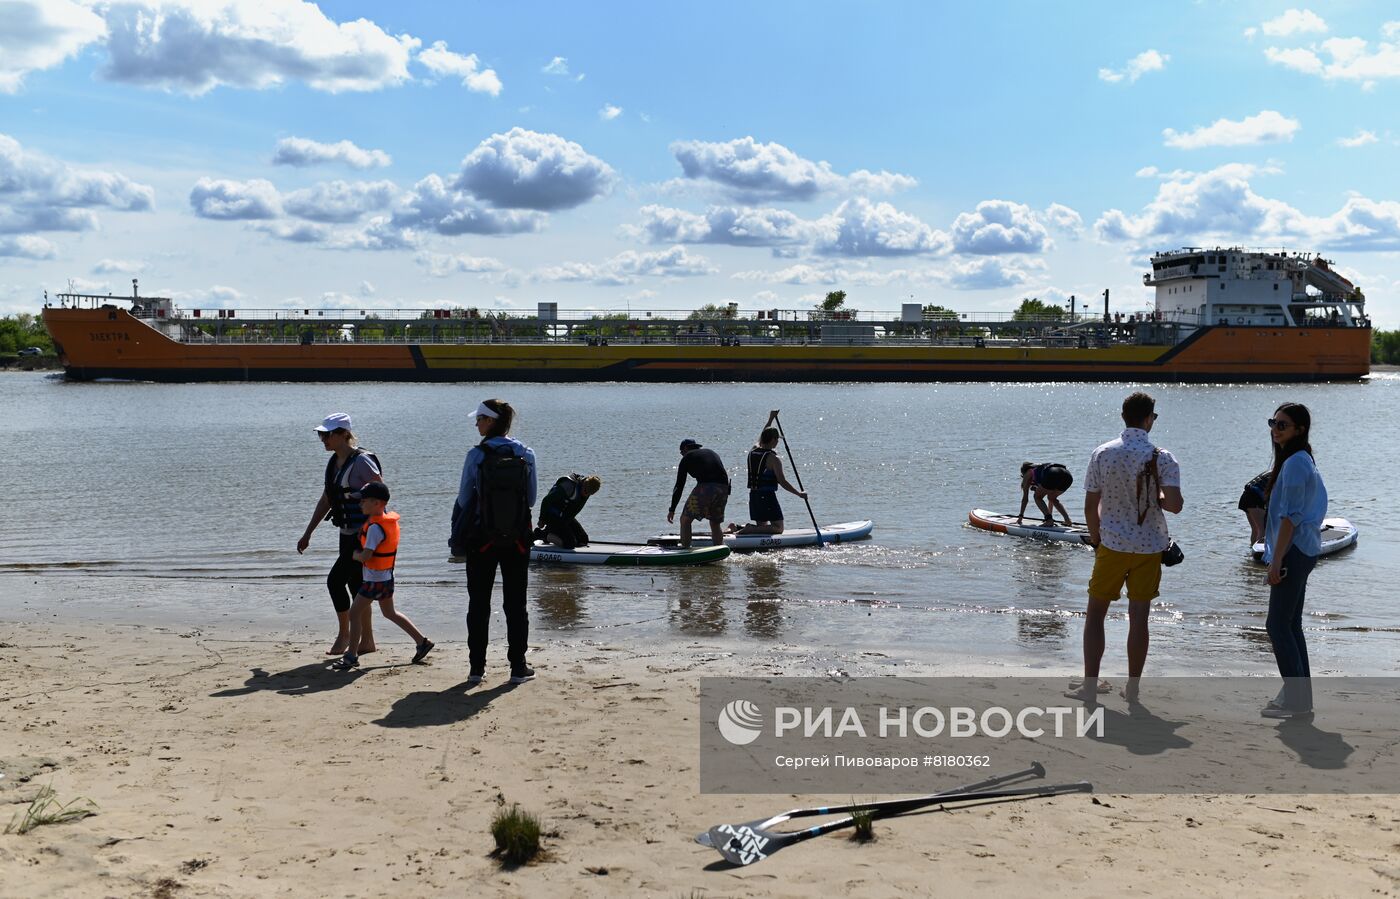 Открытие сезона sup-серфинга в Ростовской области